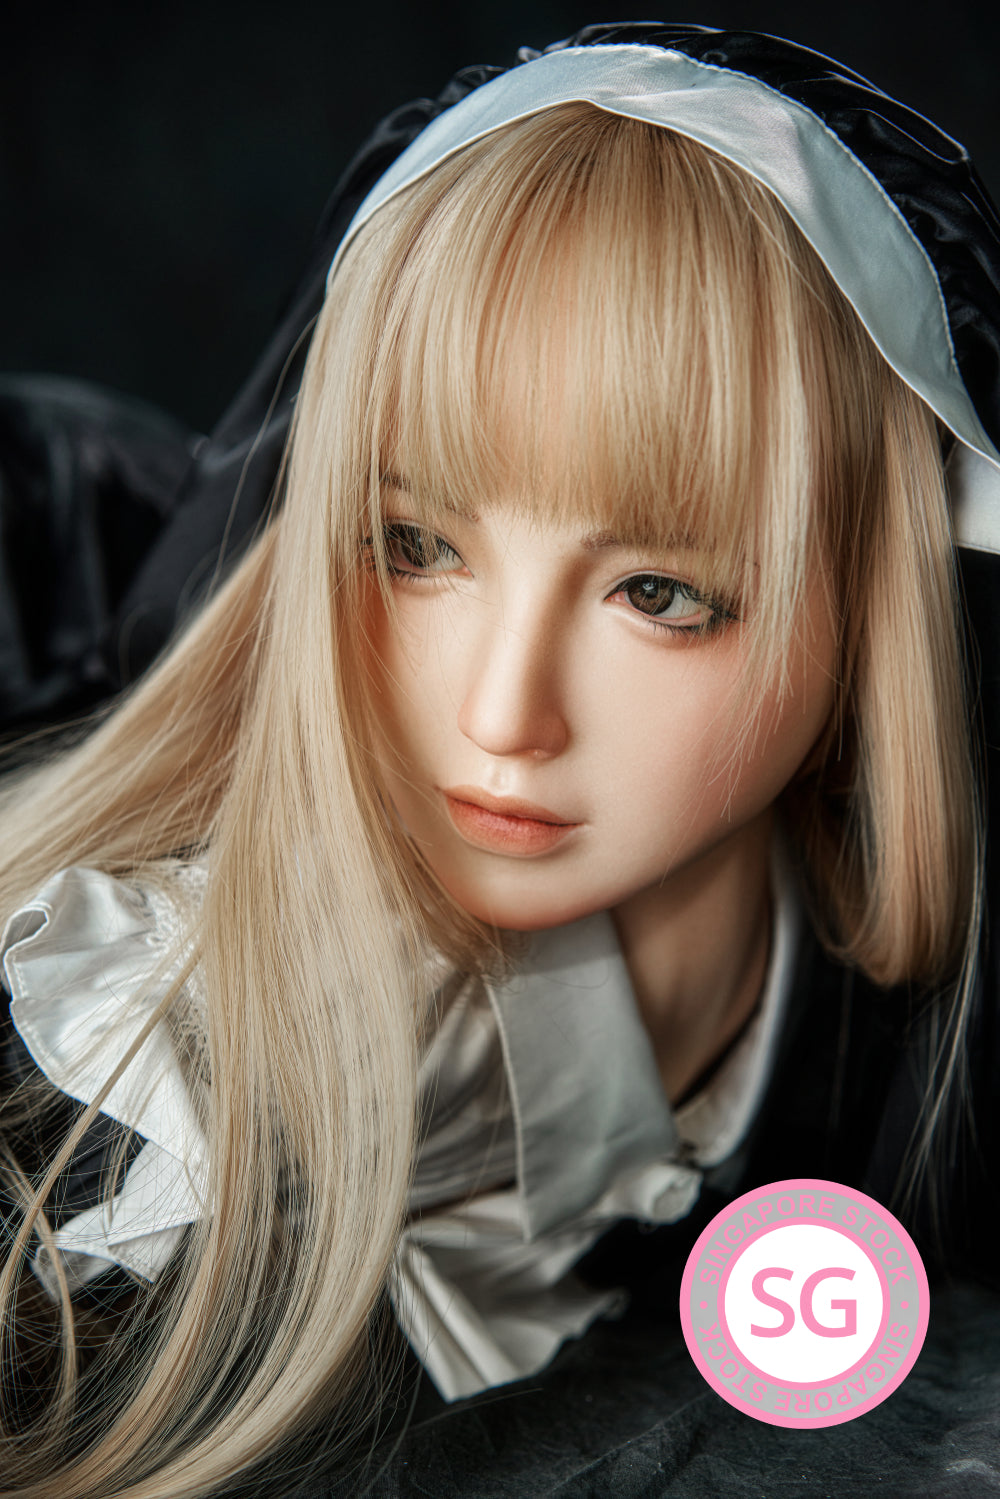 Zelex Doll 143 cm G Silicone - Fai (SG) | Sex Dolls SG